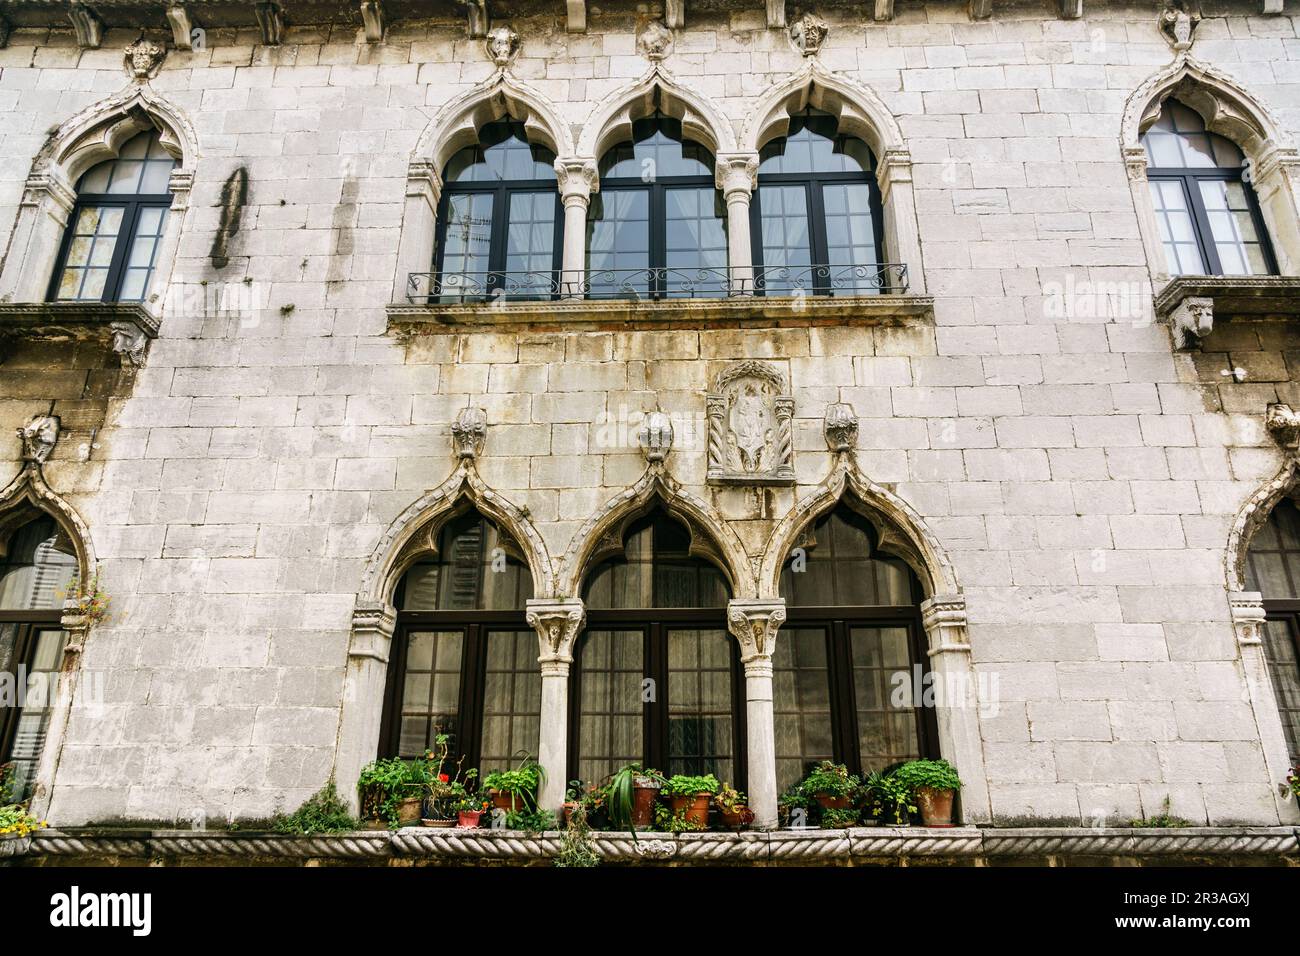 ventanas venecianas, Porec, - Parenzo-, peninsula de Istria, Croacia, europa. Stock Photo